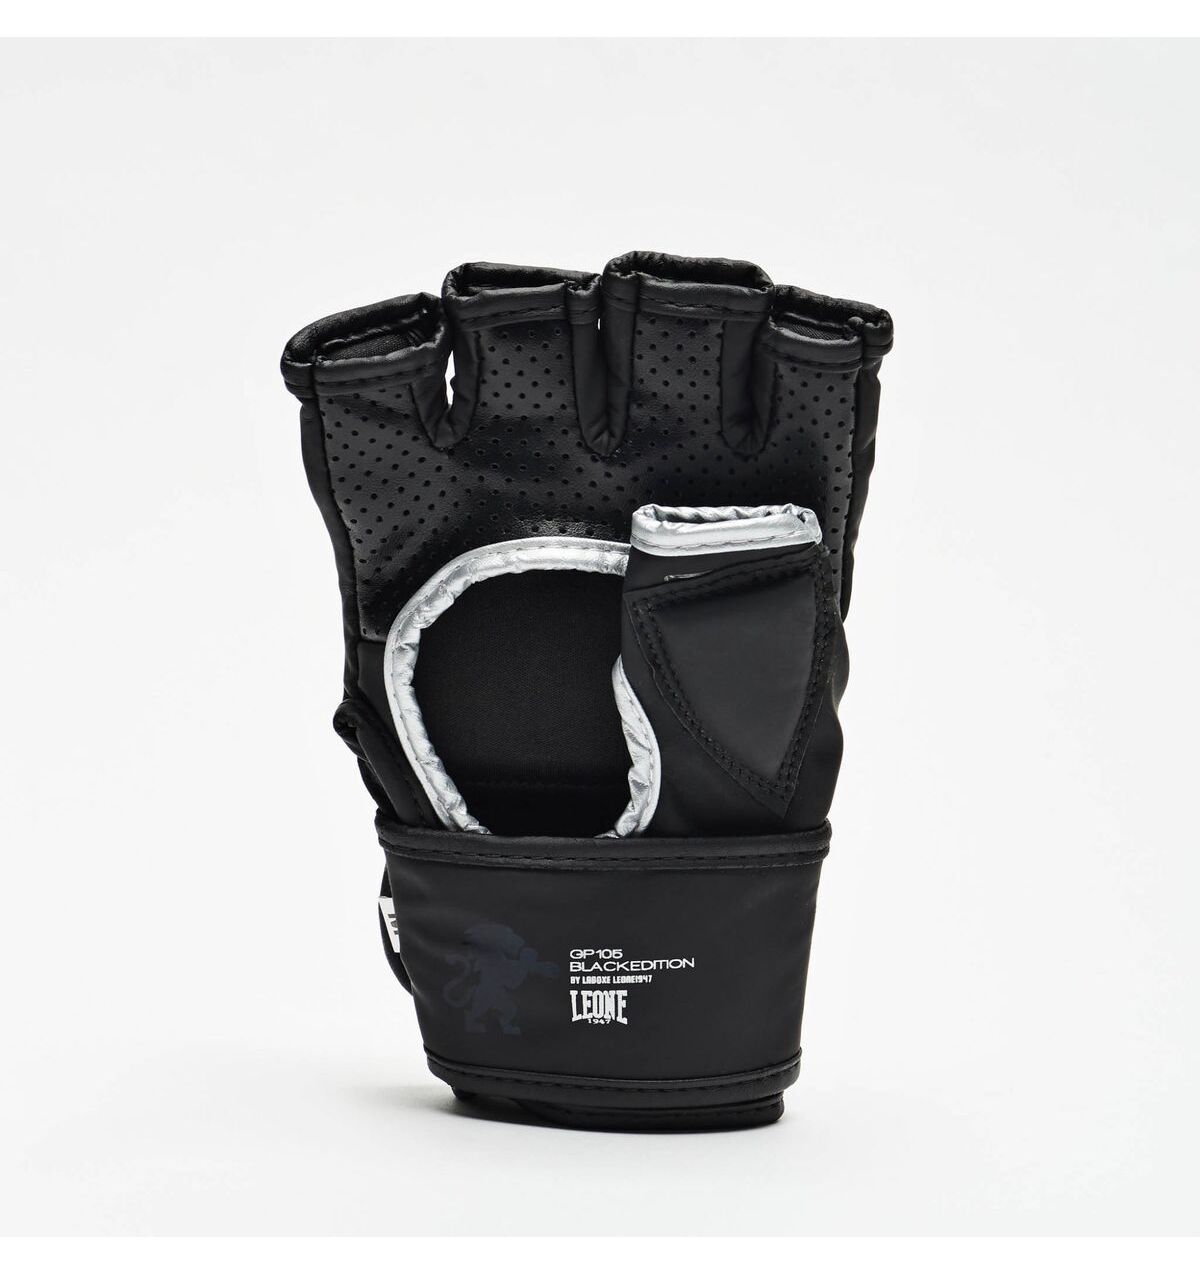 Mma Gloves Leone Black Edition GP105